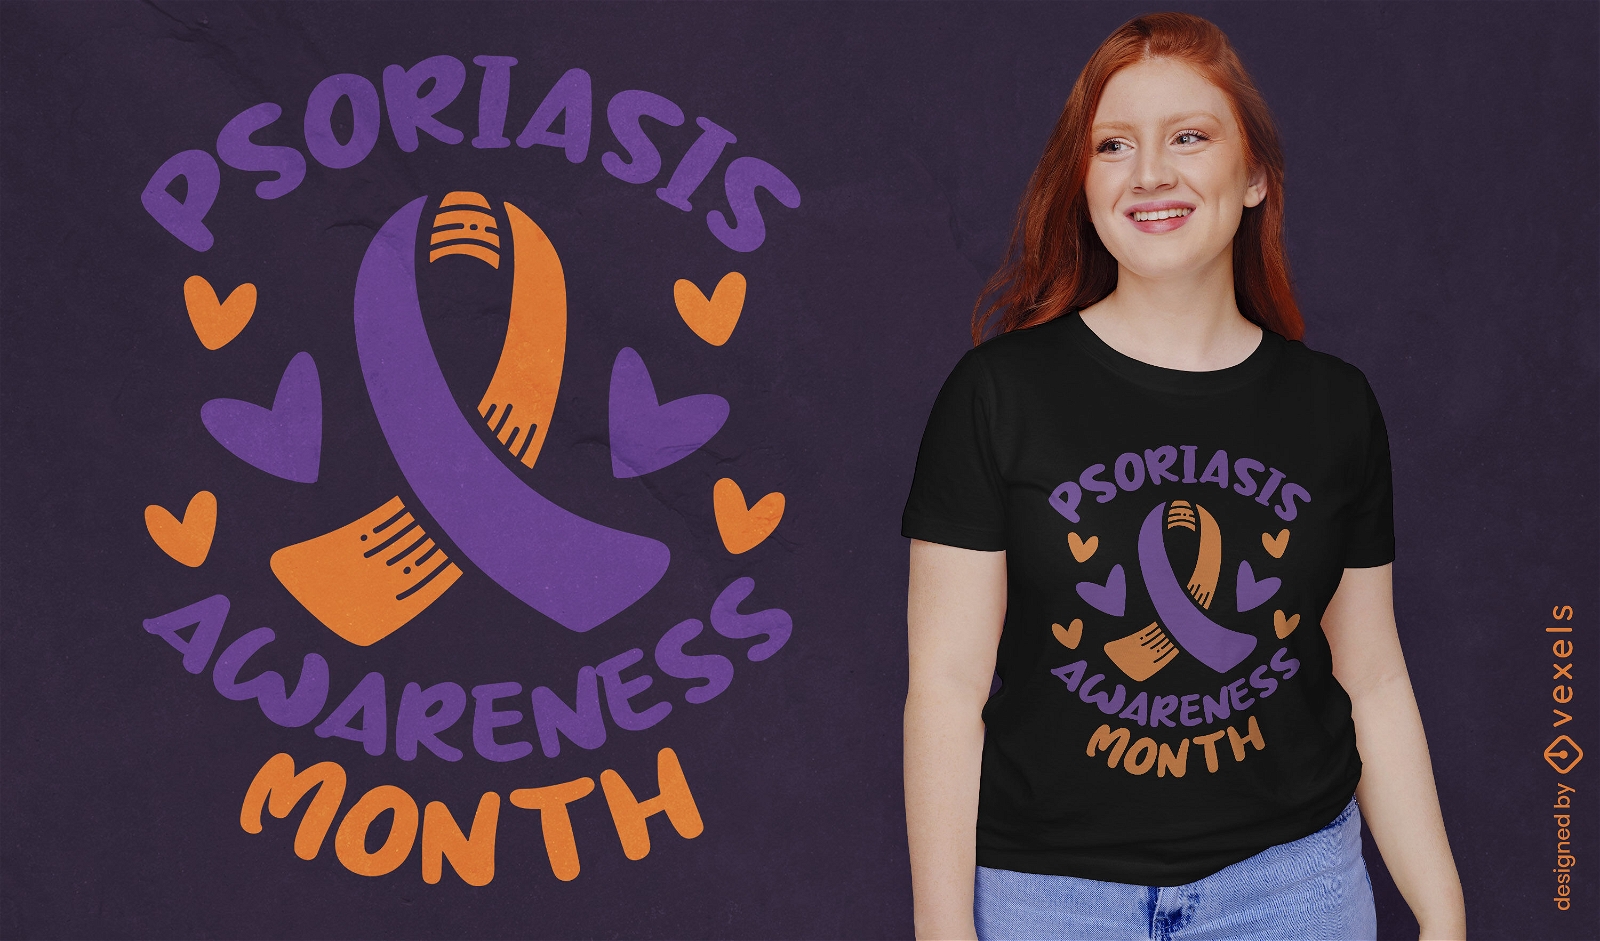 Psoriasis awareness month t-shirt design